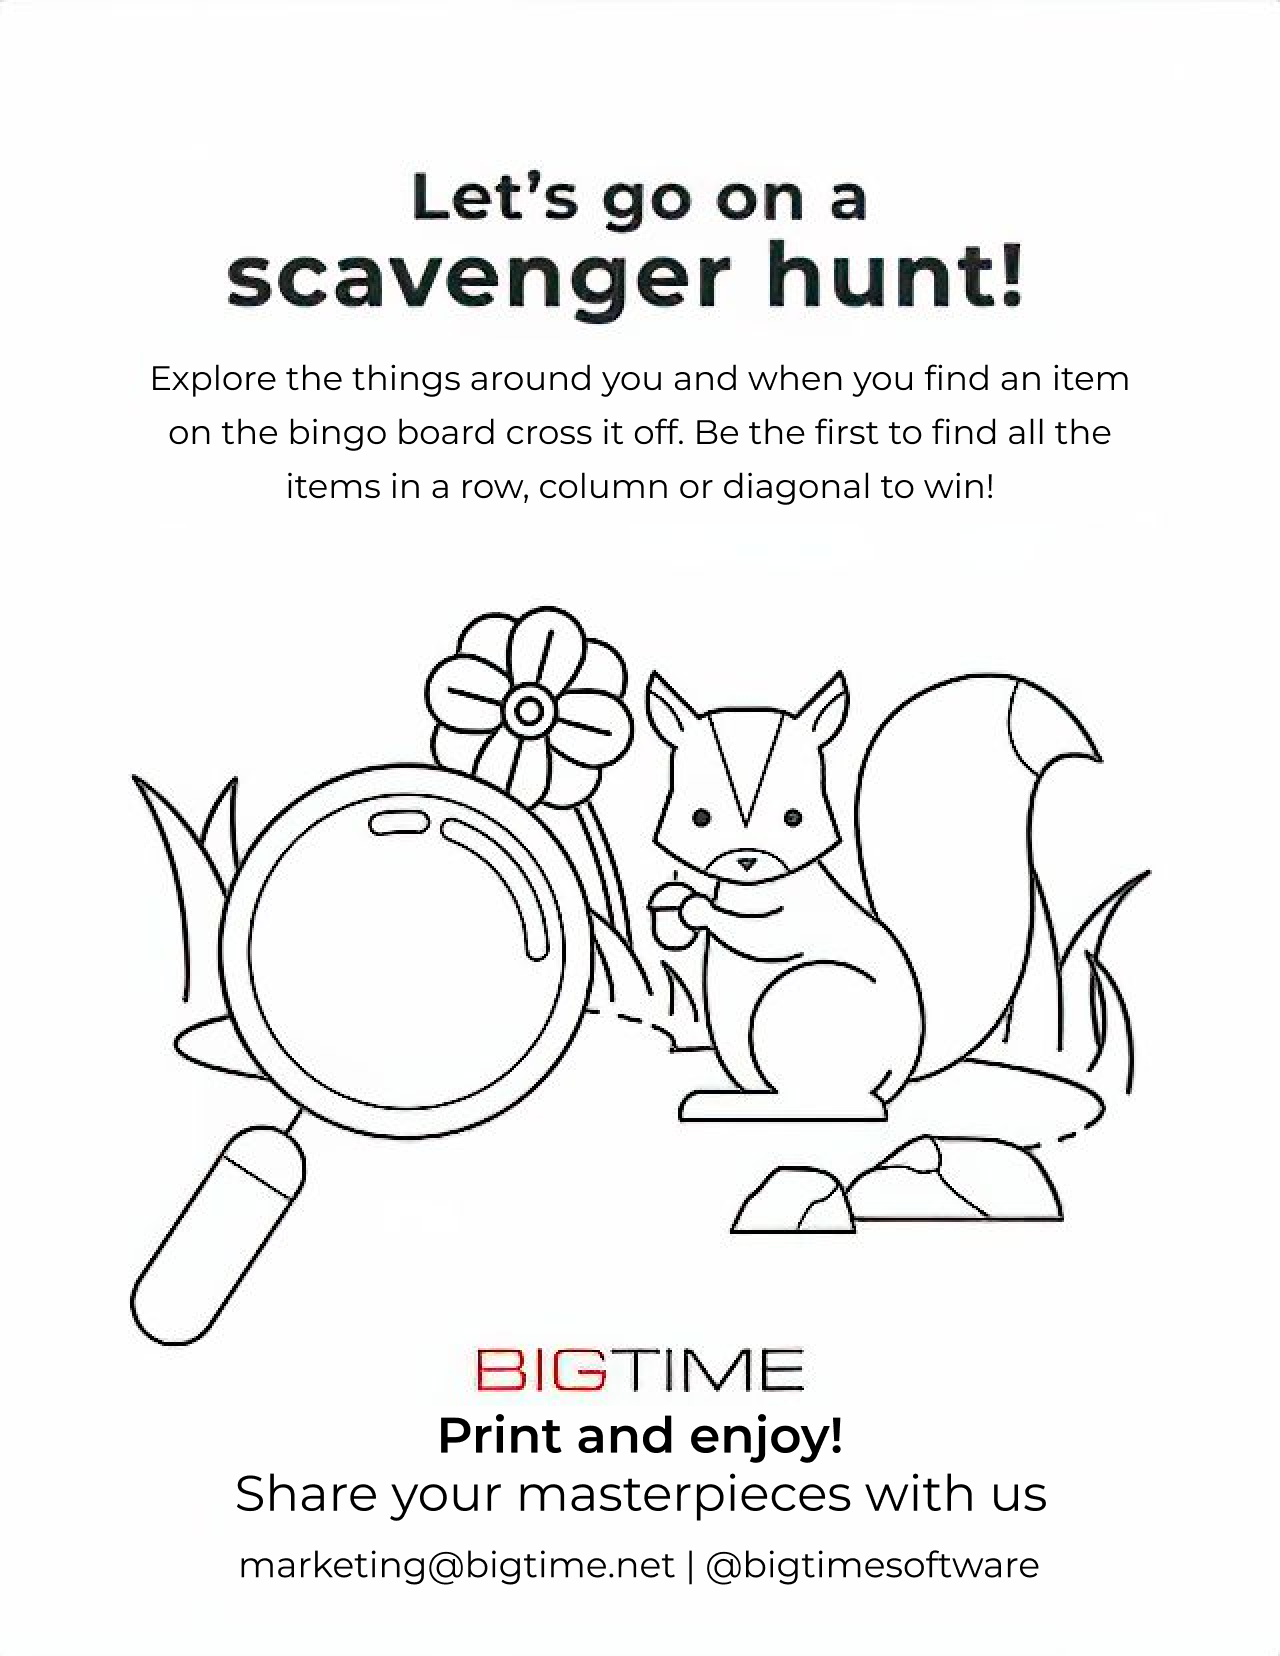 BigTime Scavenger Hunt Bingo